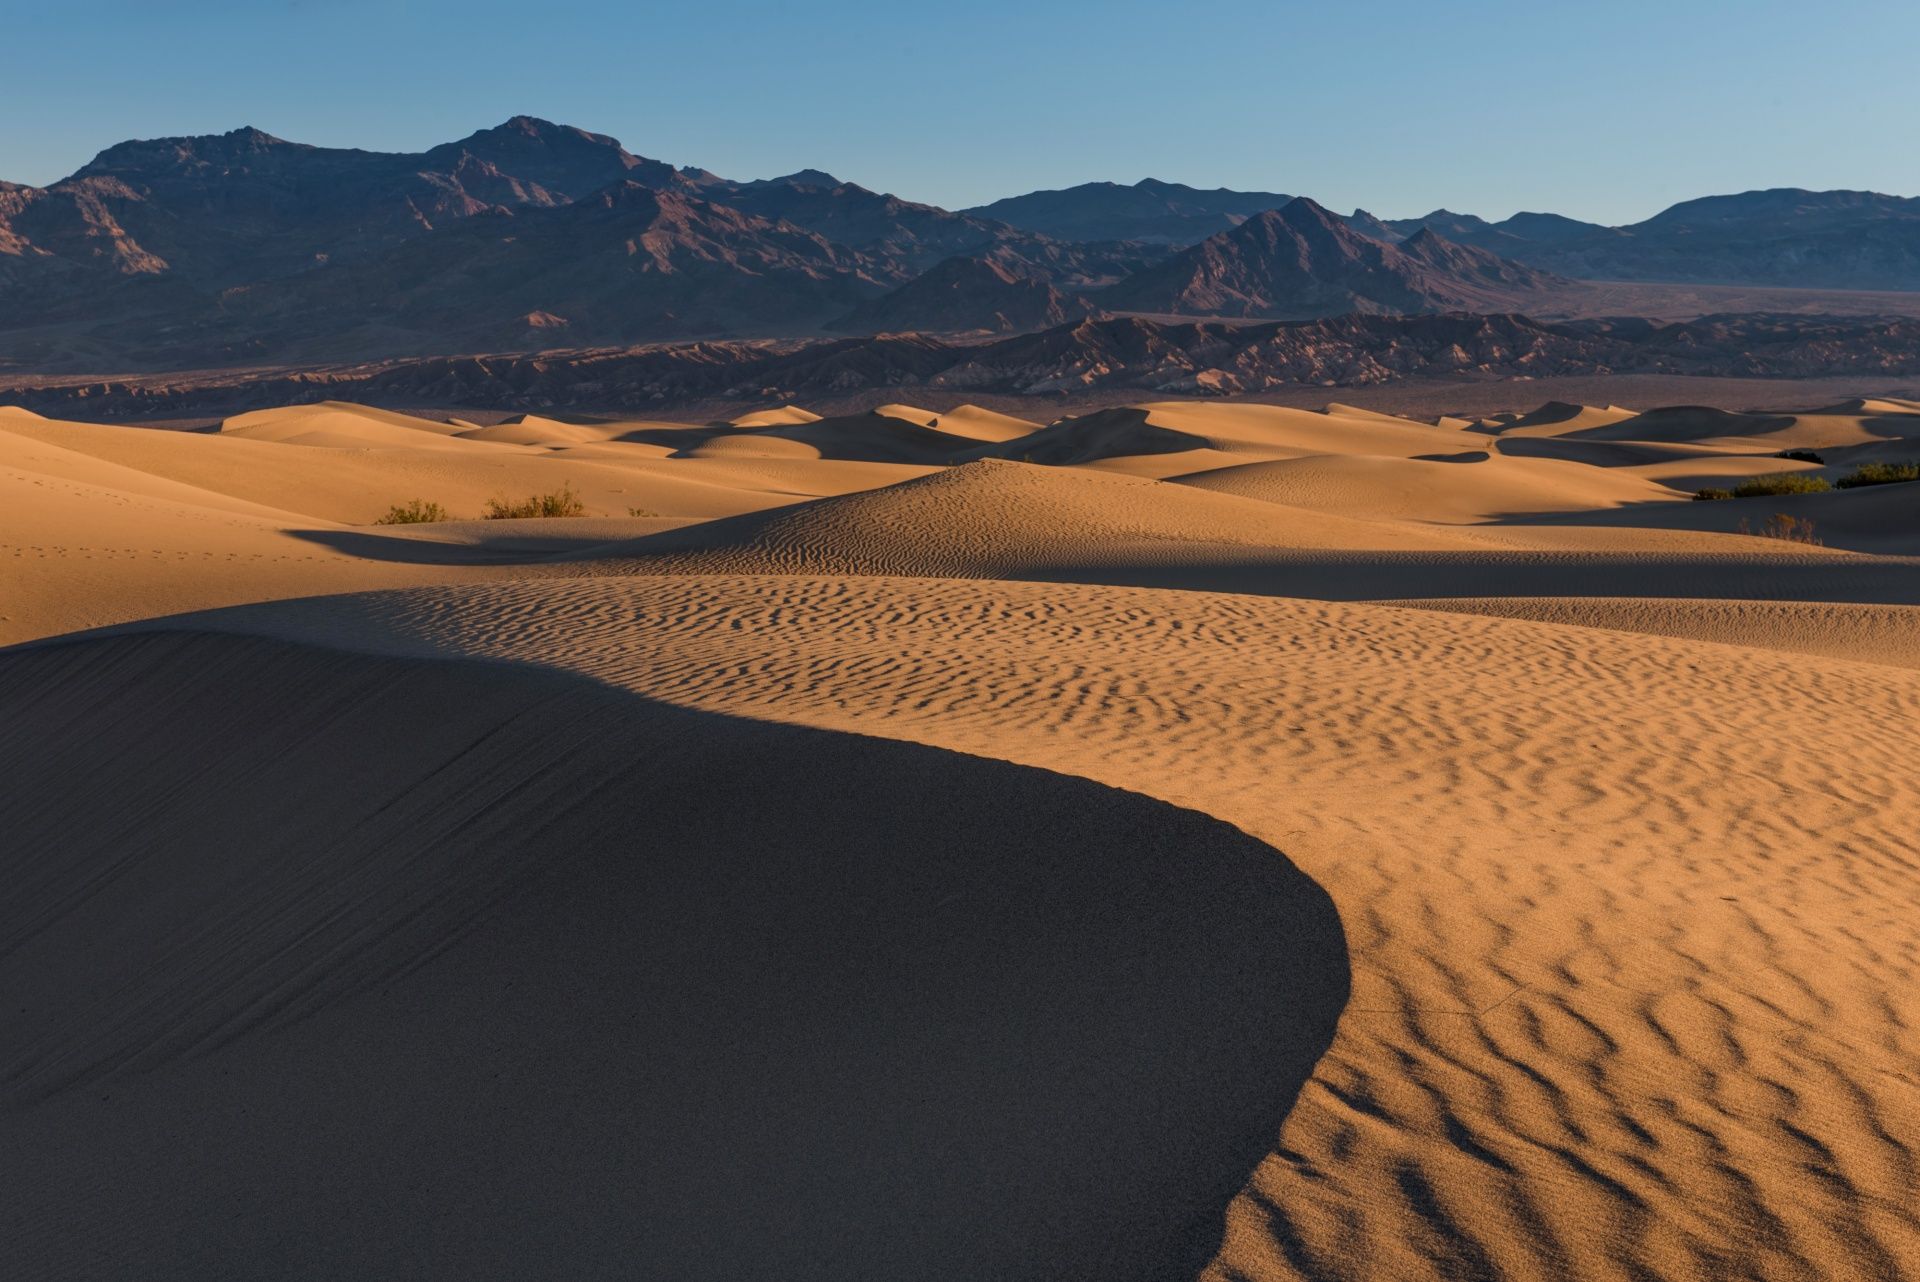   Mesquite Sand Dunes